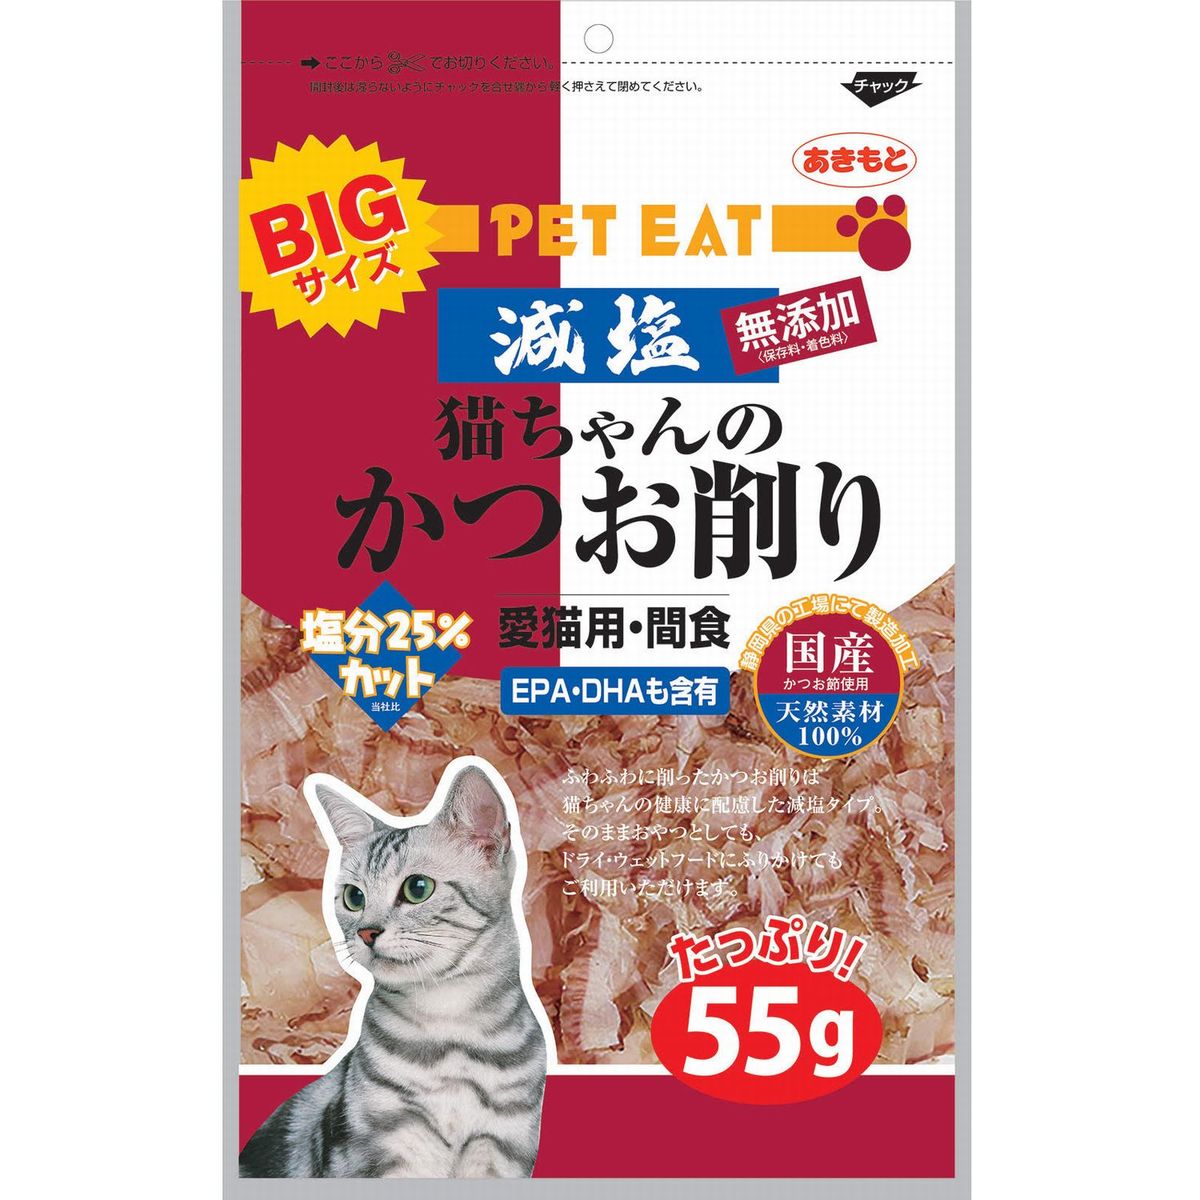 ペットイート減塩猫チャンノカツオ削リ(大) 55g×40